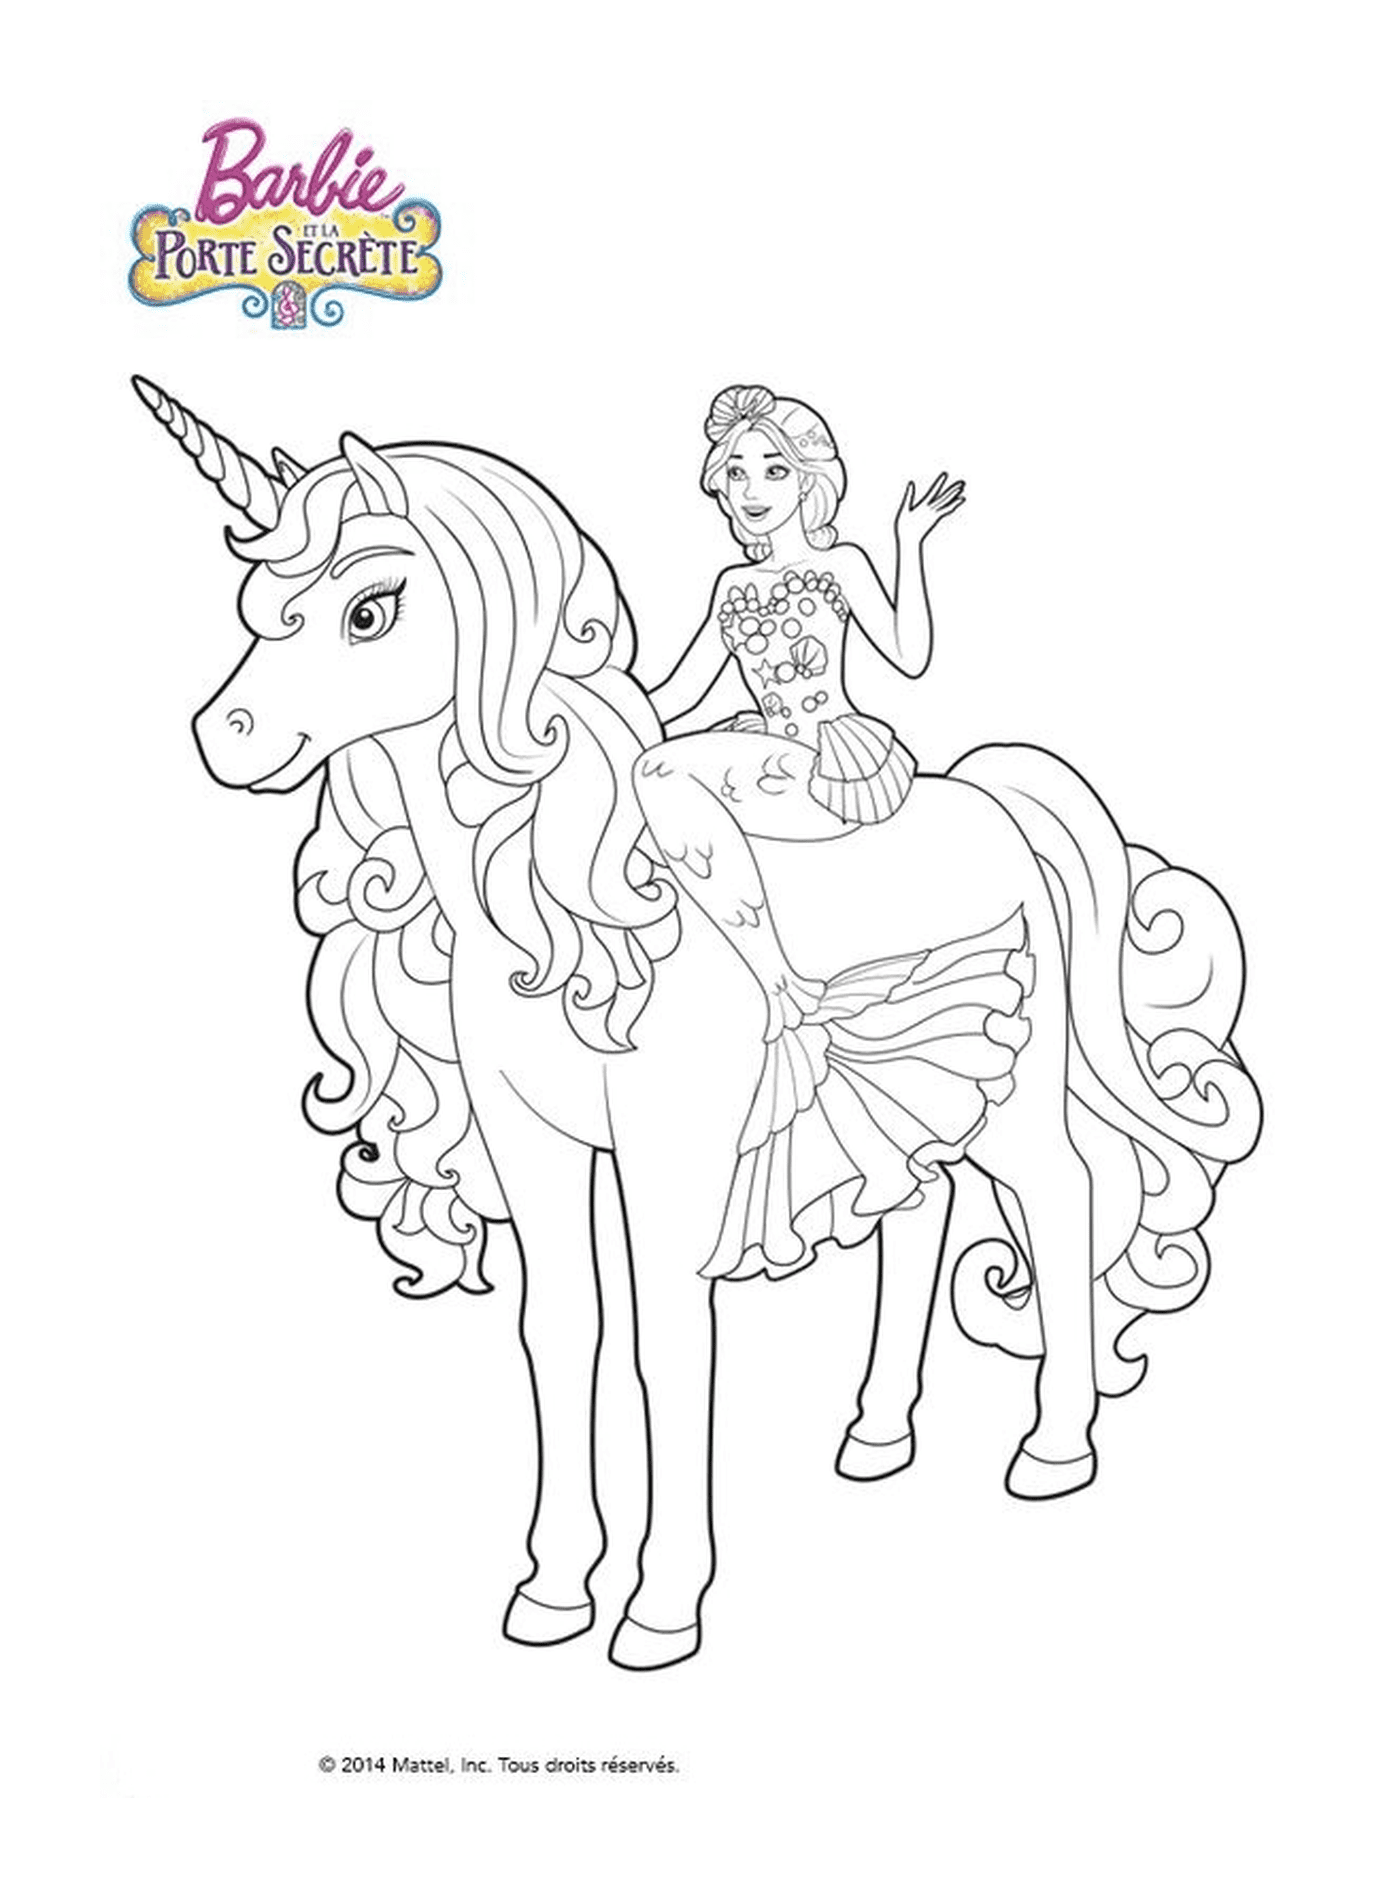  A princess riding a unicorn 